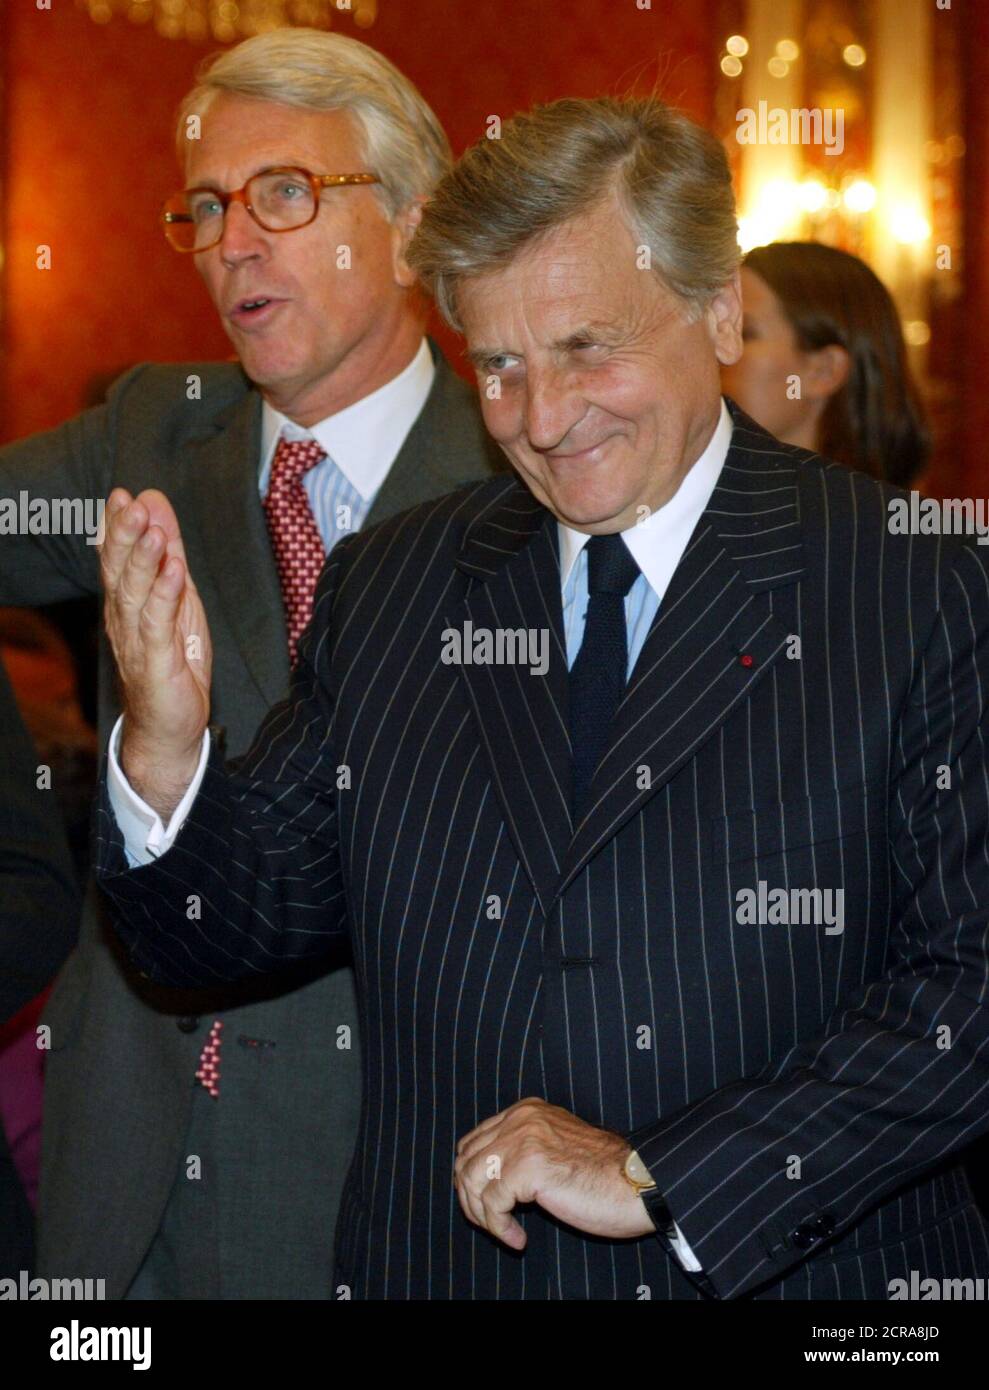 Jean-Claude Trichet (R), Président de la Banque de France et membre du  conseil de la Banque centrale européenne, et Charles de Croisset (L),  Président de la Banque de CCF arrivent à une